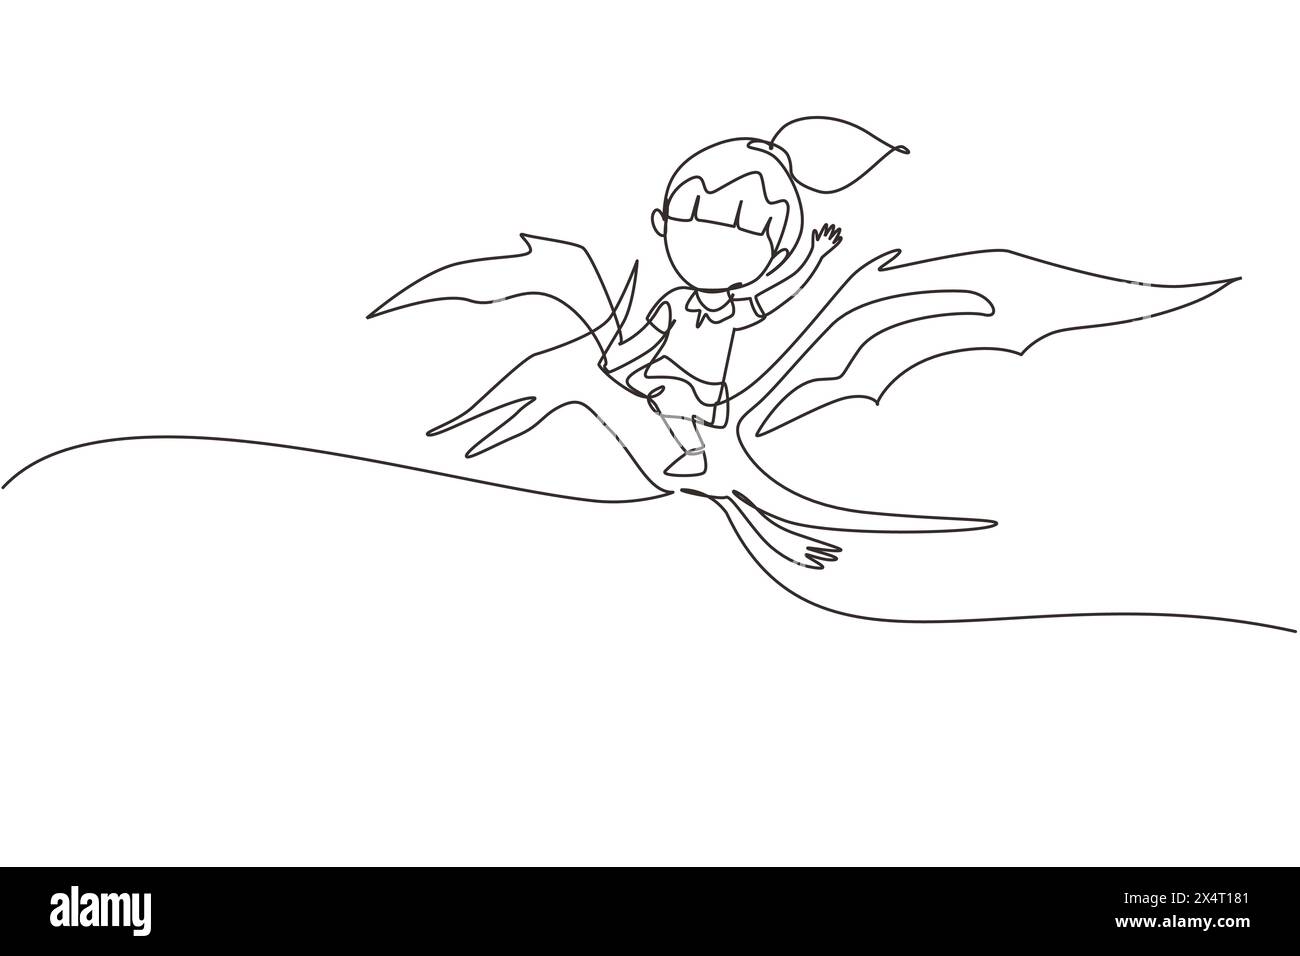 Una linea continua che disegna una ragazza che cavalca un dinosauro volante. Pterodattilo cavalca con un bambino seduto sul retro del dinosauro e volando in alto nel cielo. Singolo li Illustrazione Vettoriale